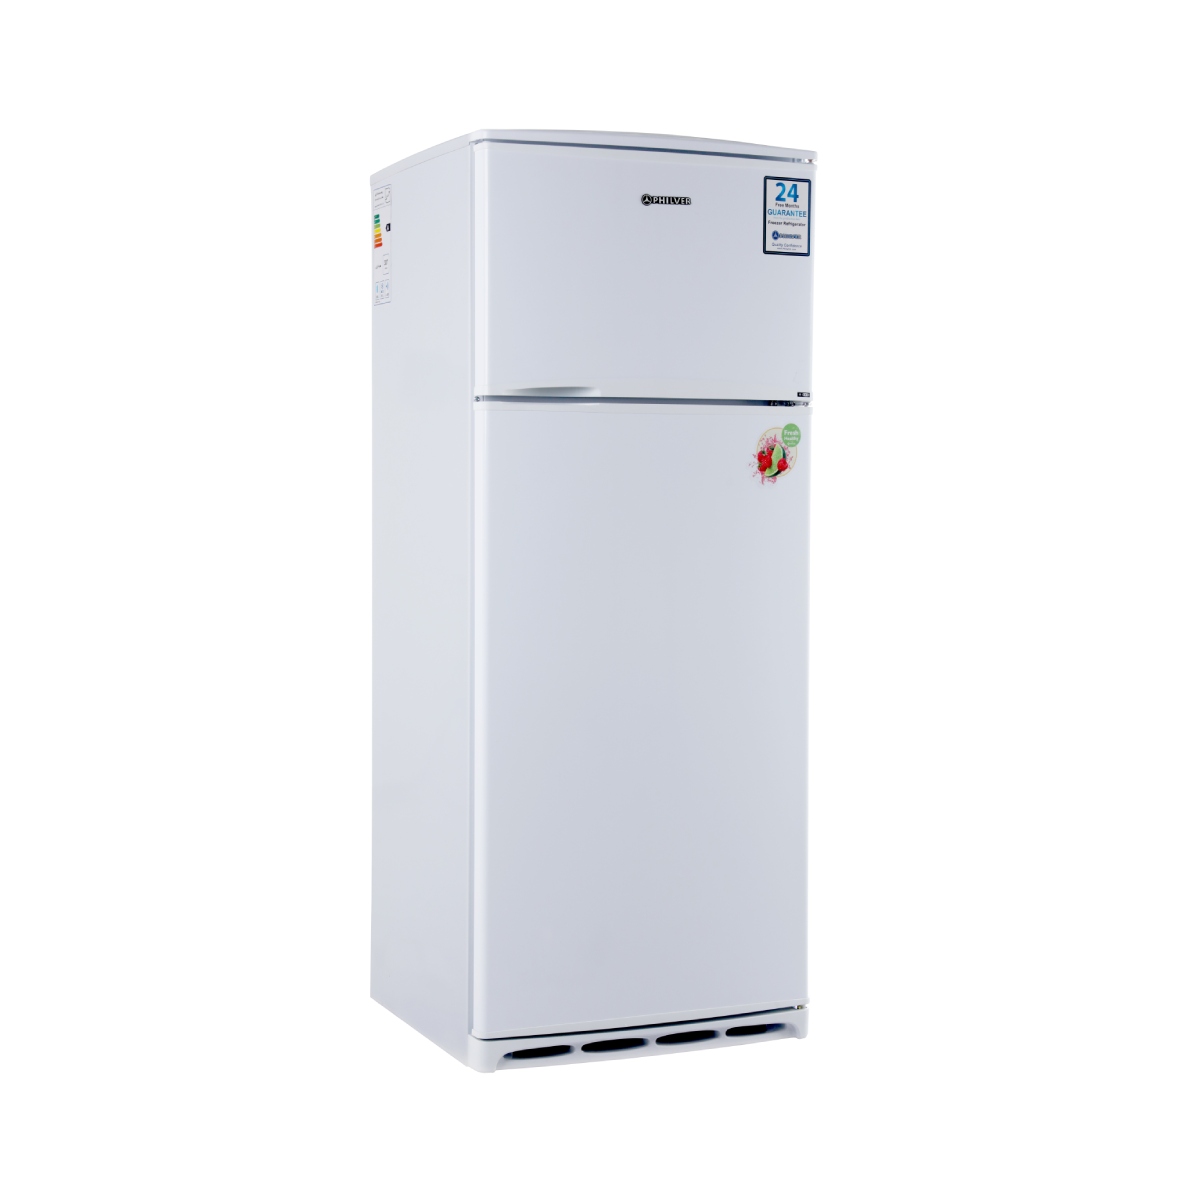 2 -door freezer refrigerator - Filur